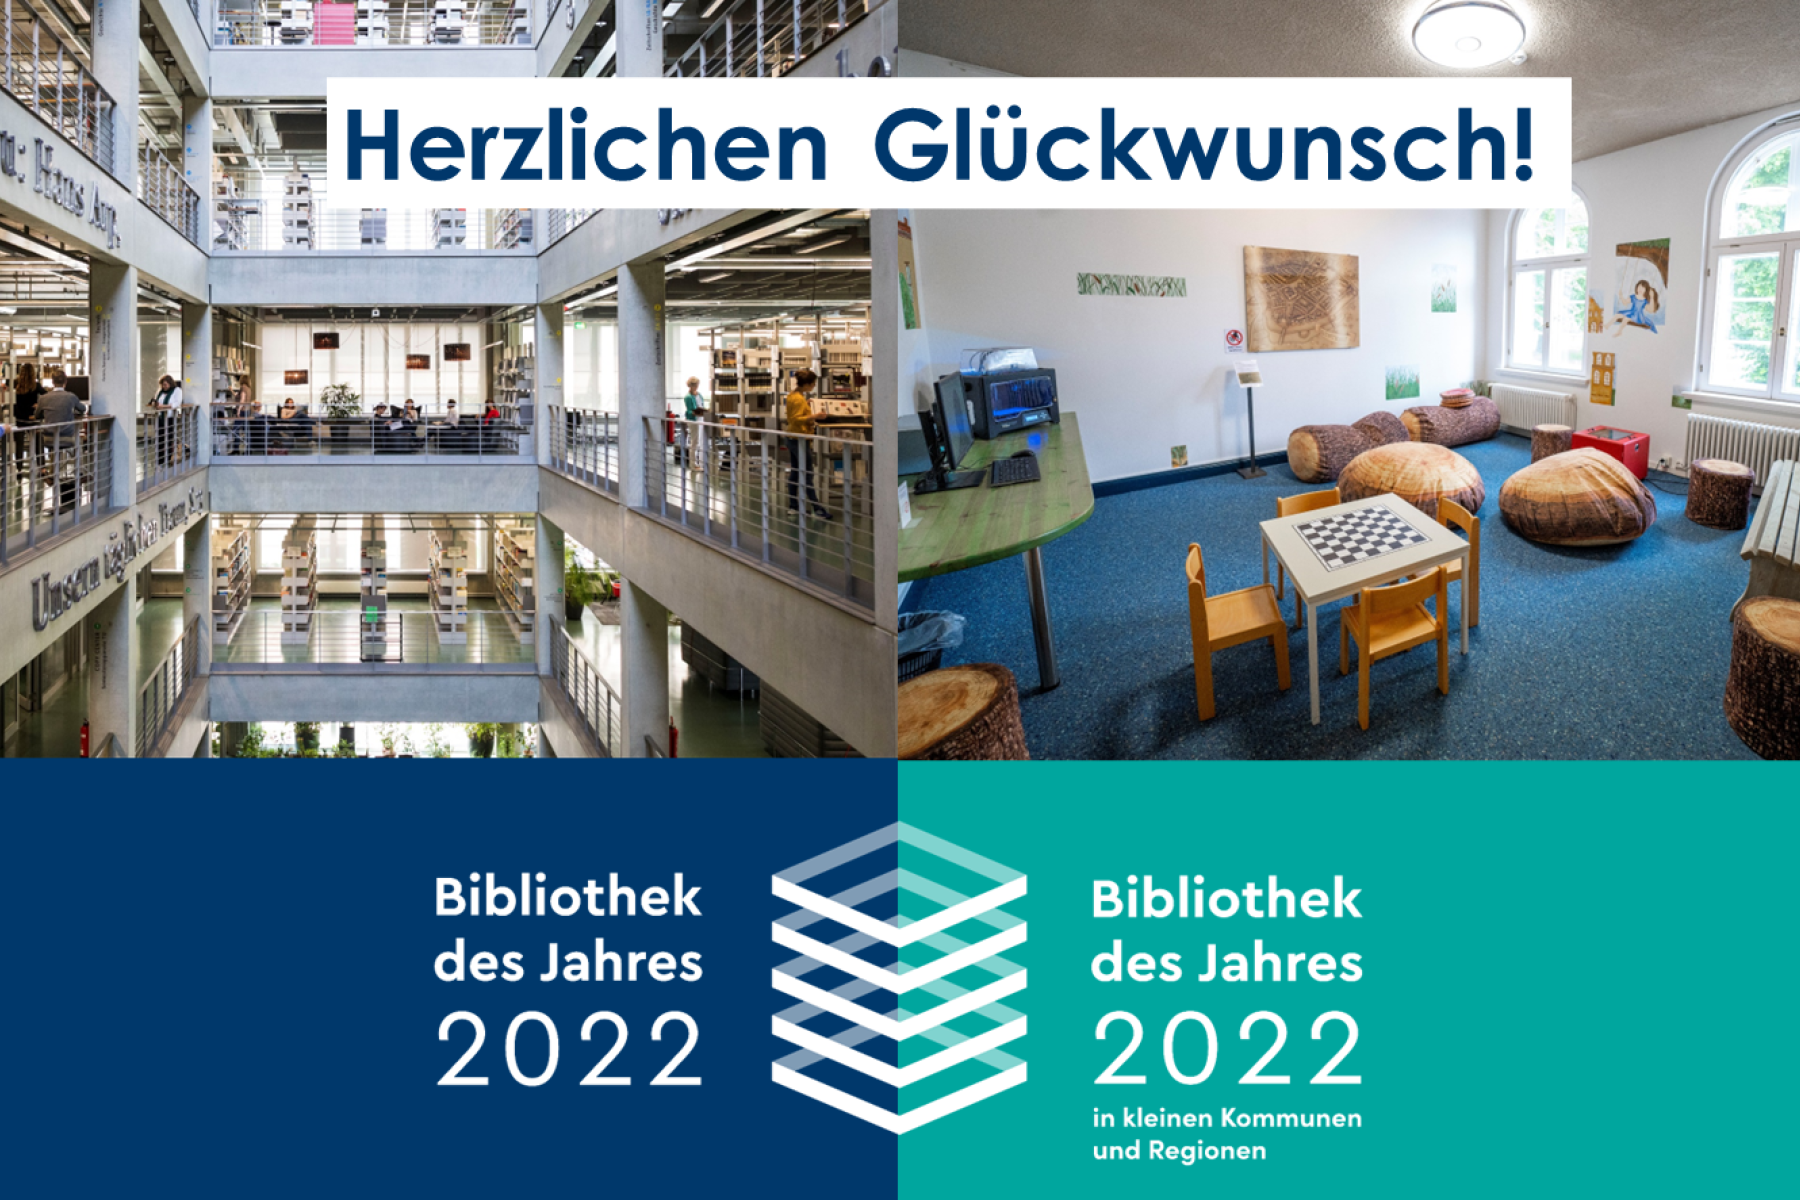 Innenansichten der Universitätsbibliotheken der Technischen Universität Berlin und der Universität der Künste Berlin, sowie die Uwe Johnson-Bibliothek Güstrow.